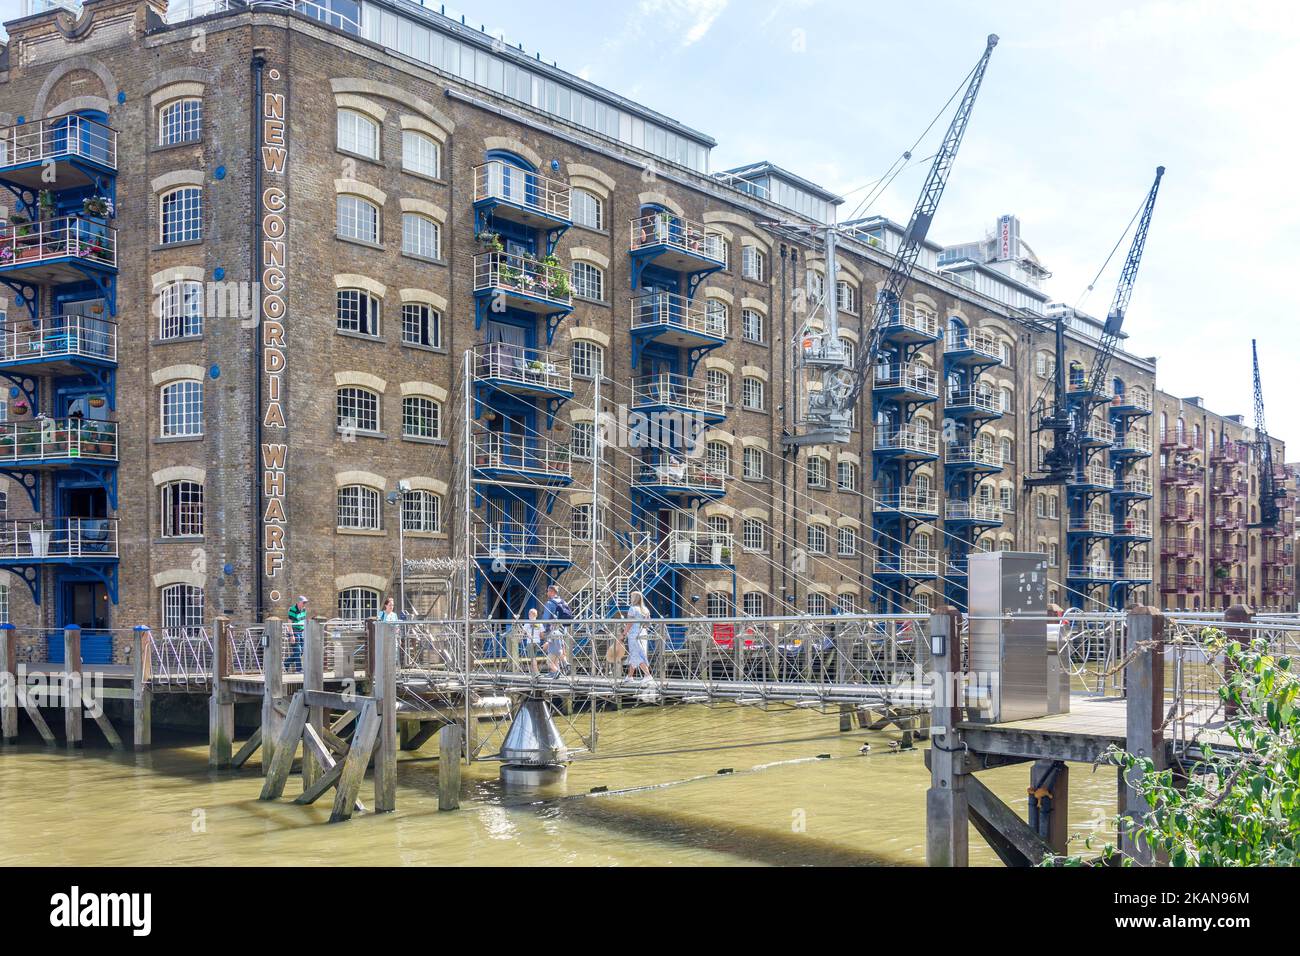 Pont de St Saveurs Dock, St Saveurs Dock, Bermondsey, le quartier londonien de Southwark, Grand Londres, Angleterre, Royaume-Uni Banque D'Images